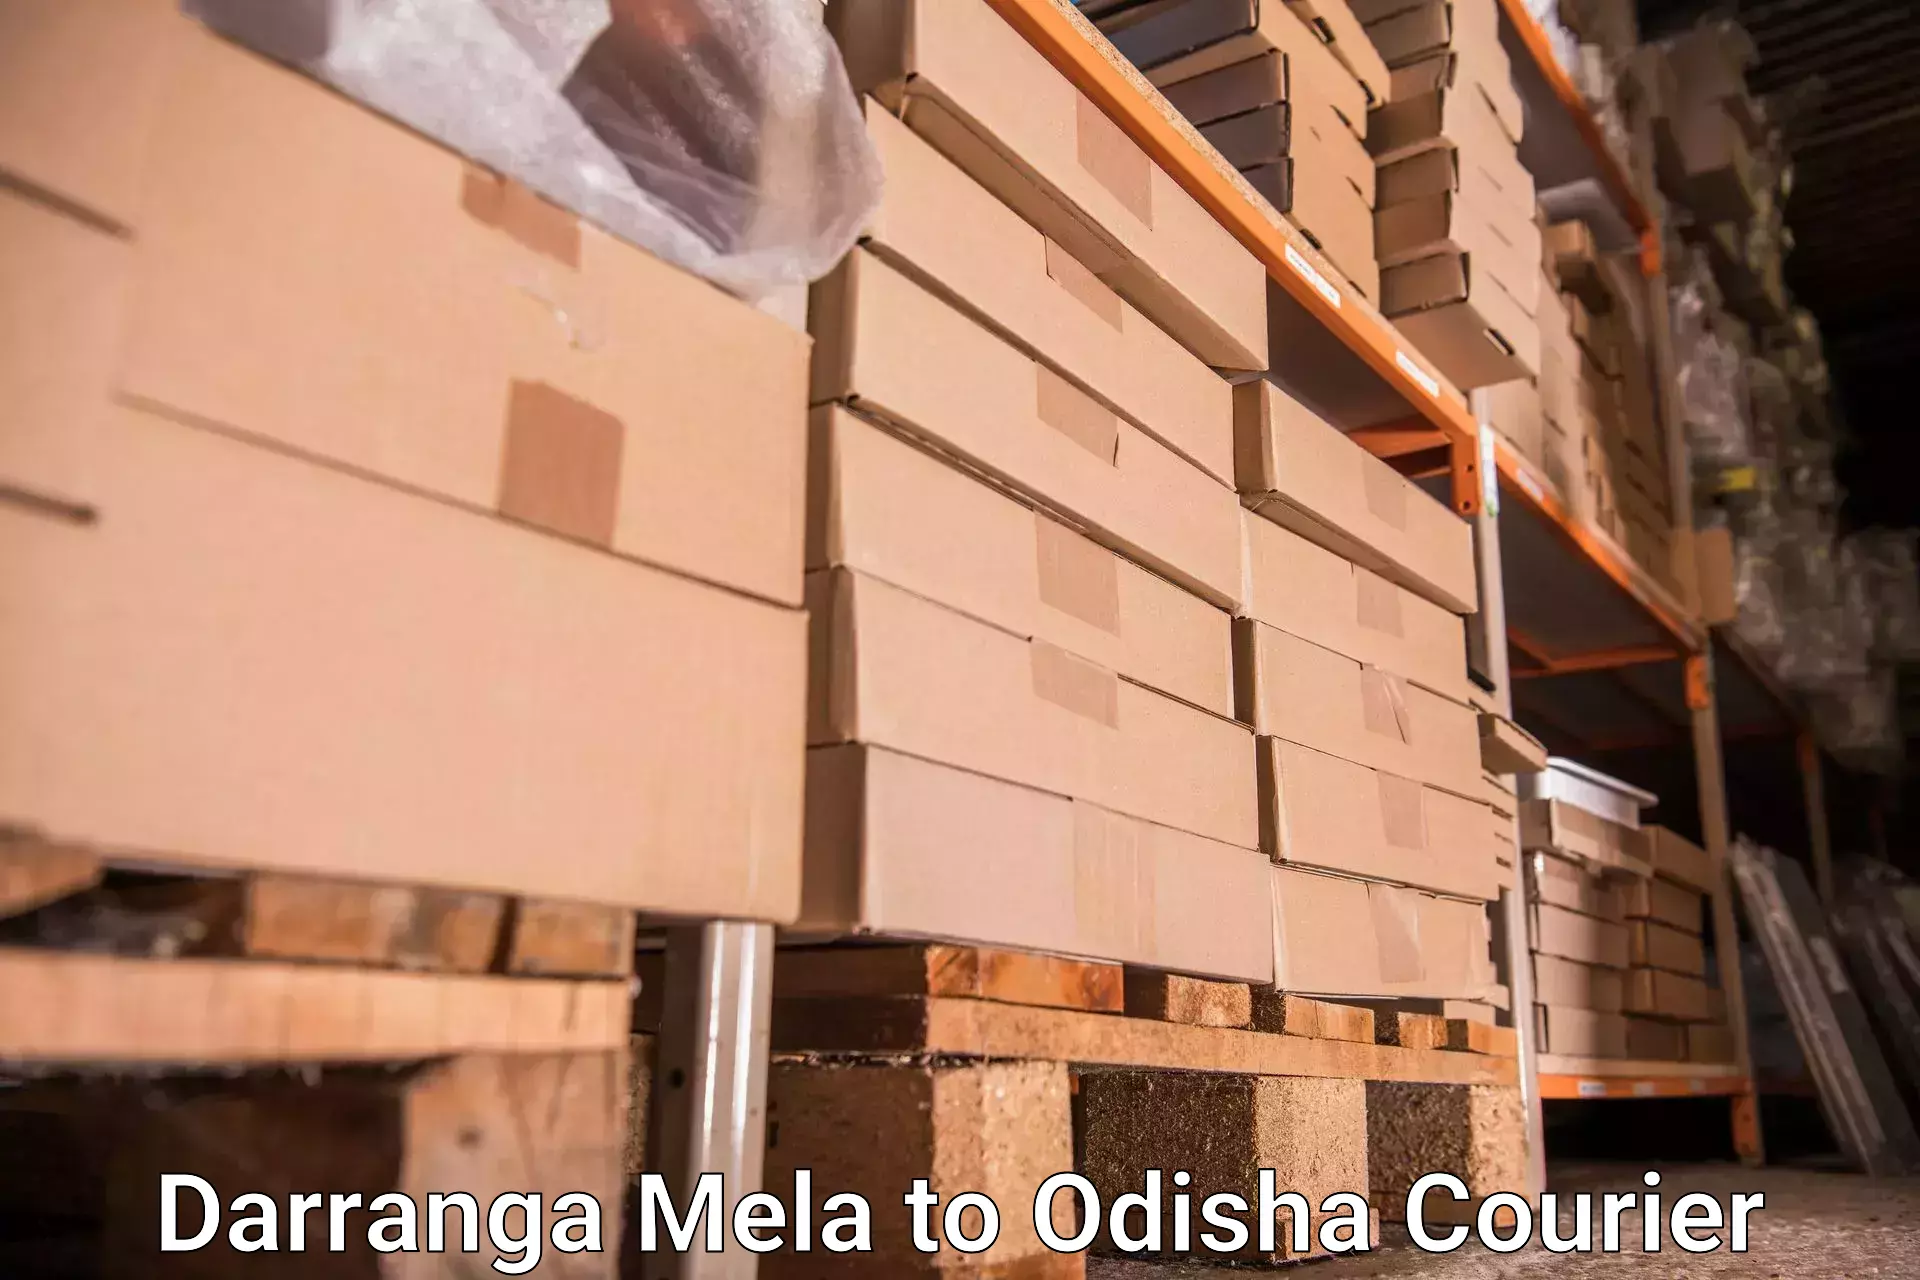 Customized luggage delivery Darranga Mela to Balikuda